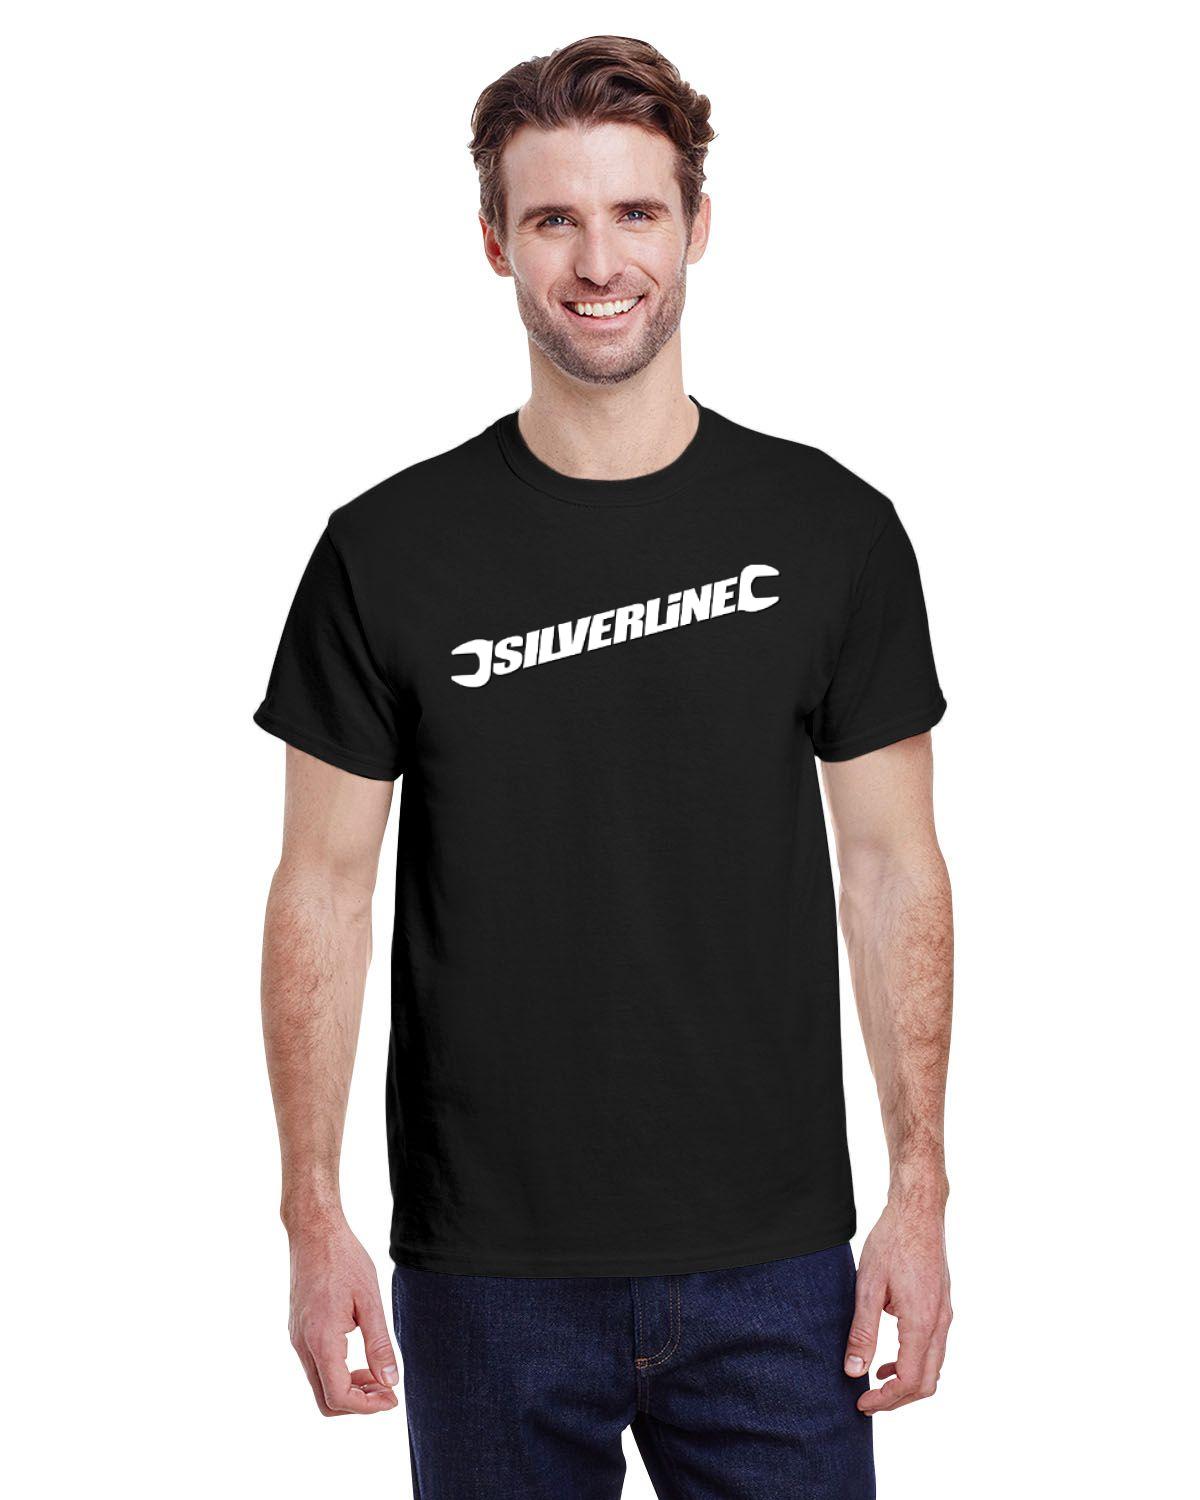 Silverline Men's Tshirt